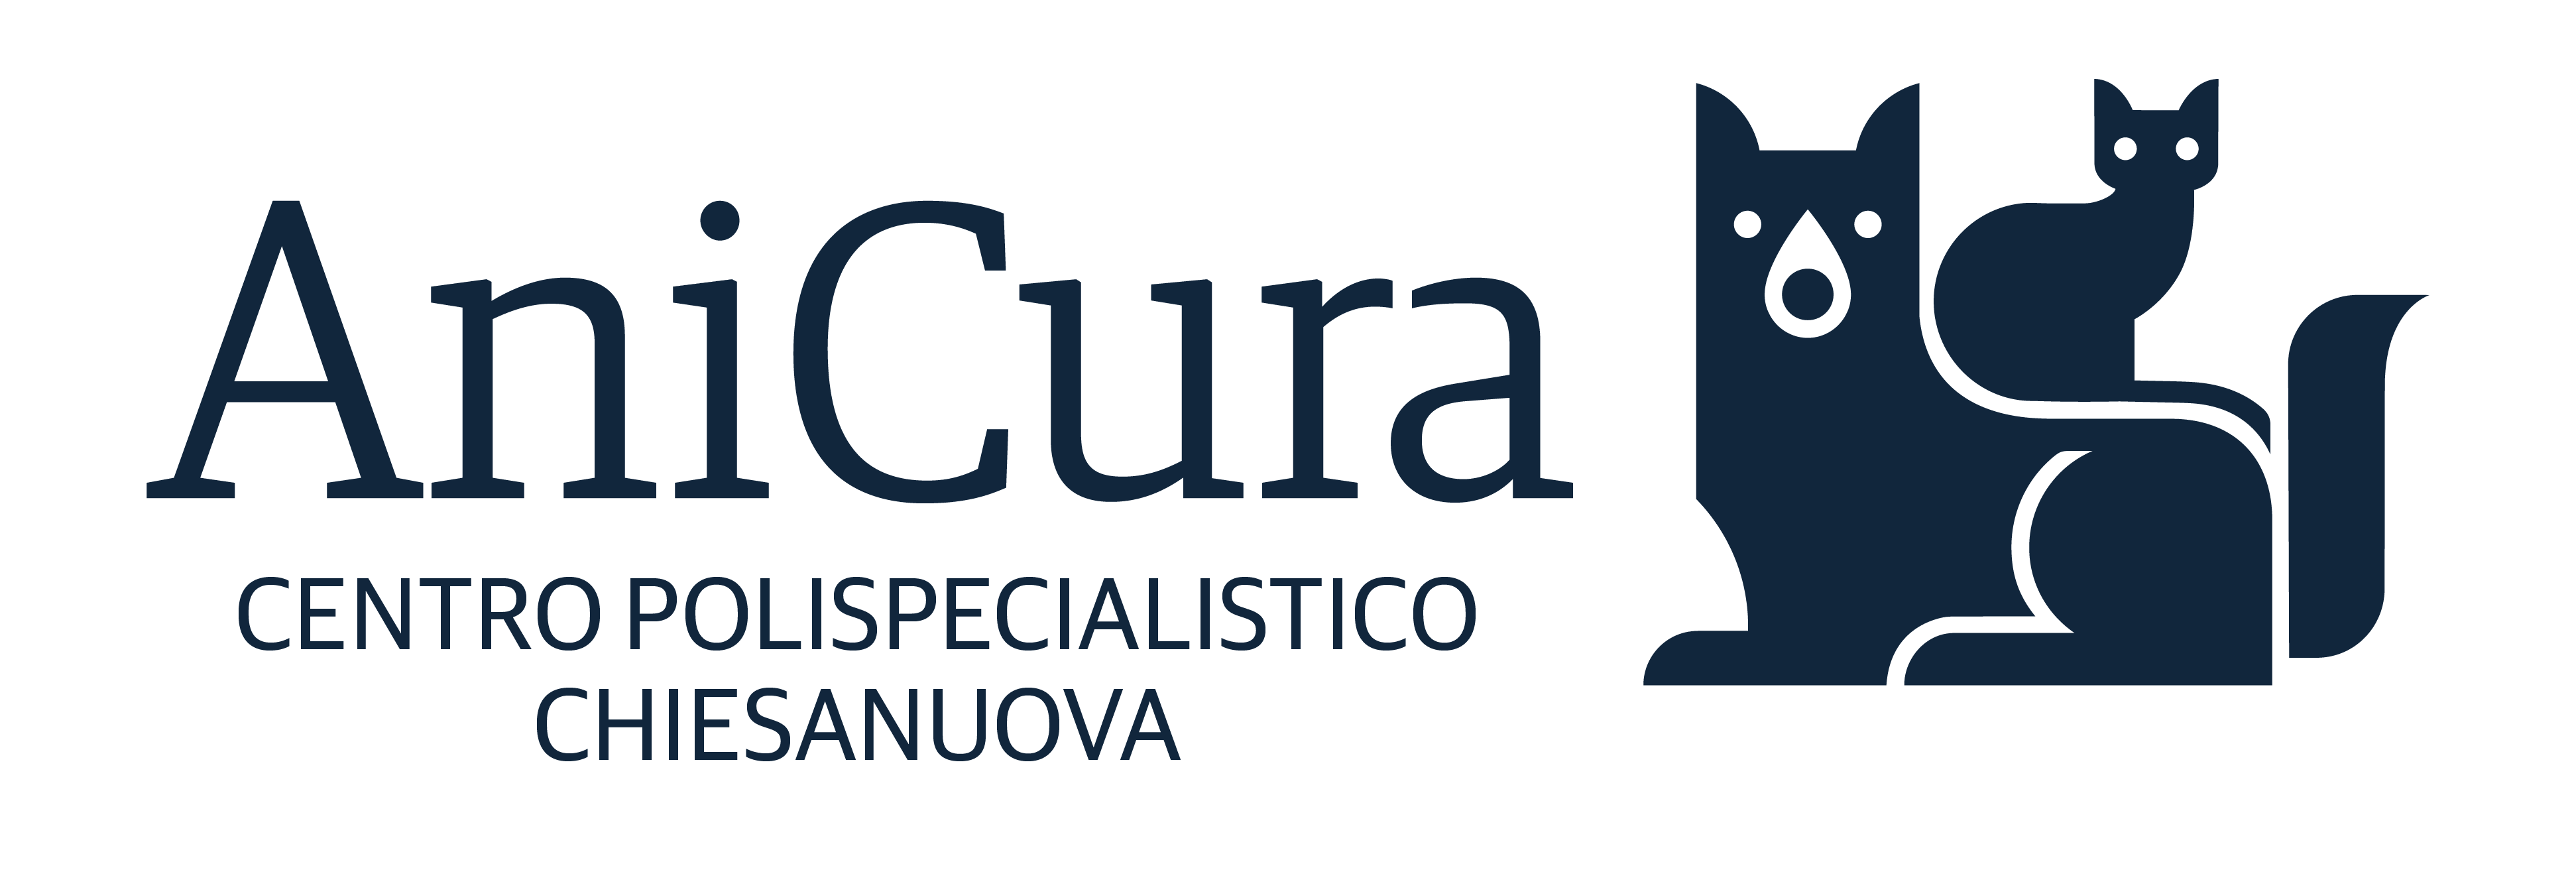 AniCura Centro Polispecialistico Chiesanuova logo